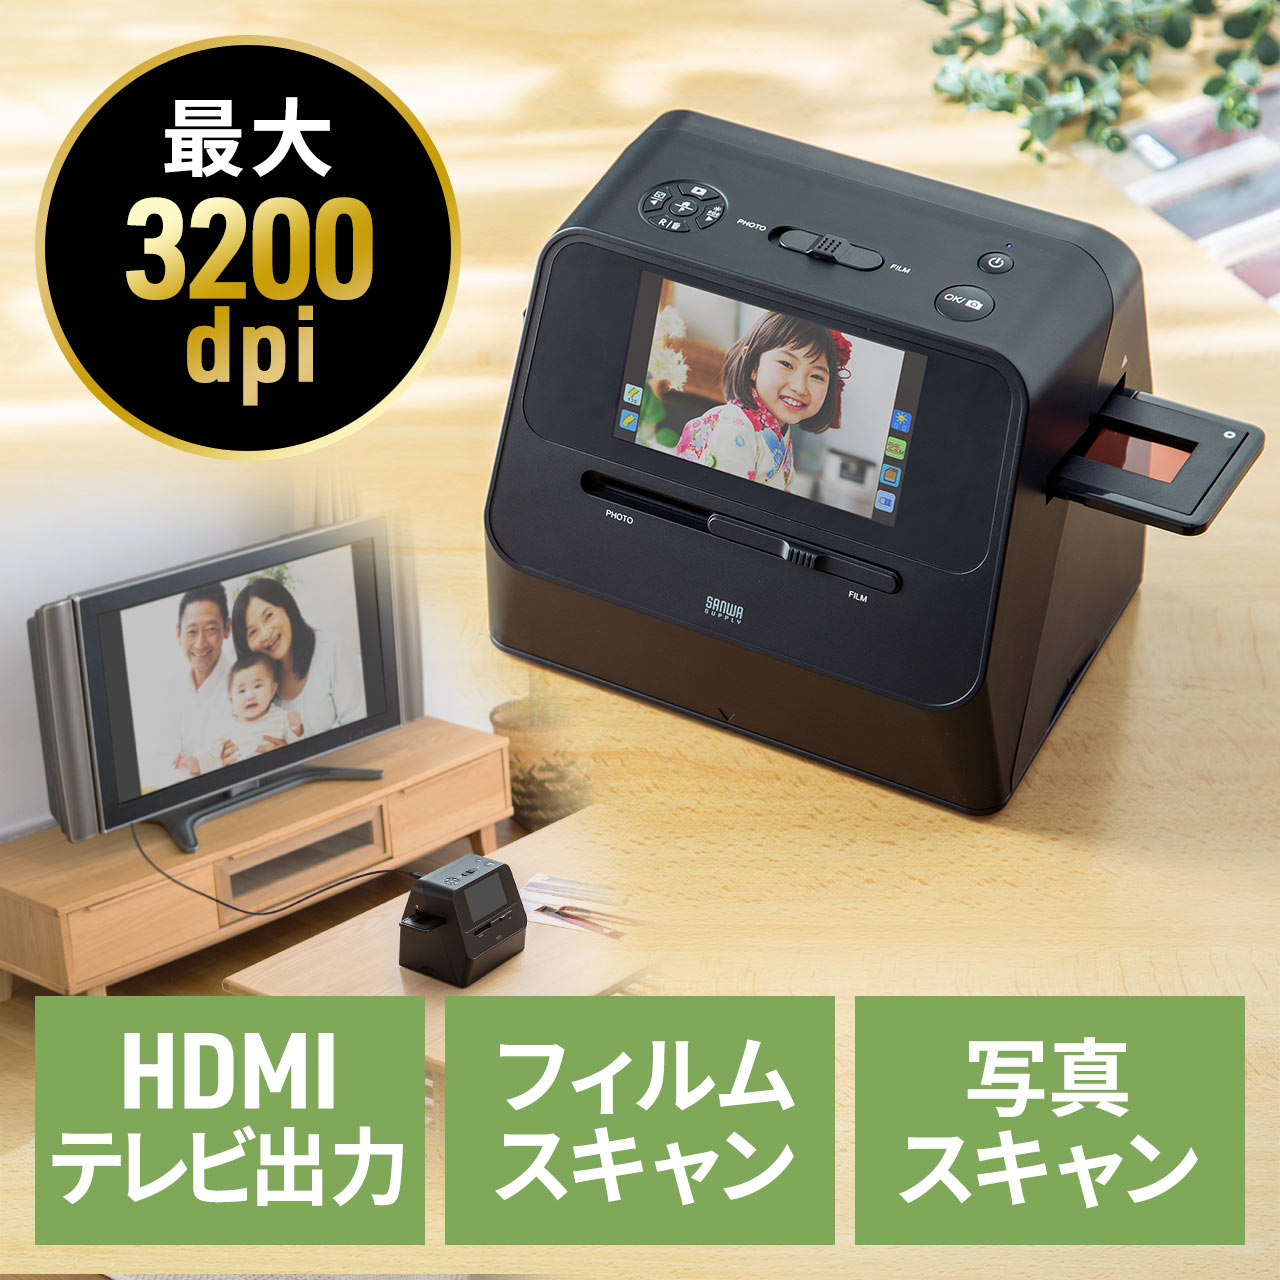 フィルムスキャナー 35mm/110/126フィルム対応 ネガデジタル化 ネガスキャナー 写真スキャン HDMI出力 テレビ出力 フィルム3200dpi 写真700dpi 400-SCN064